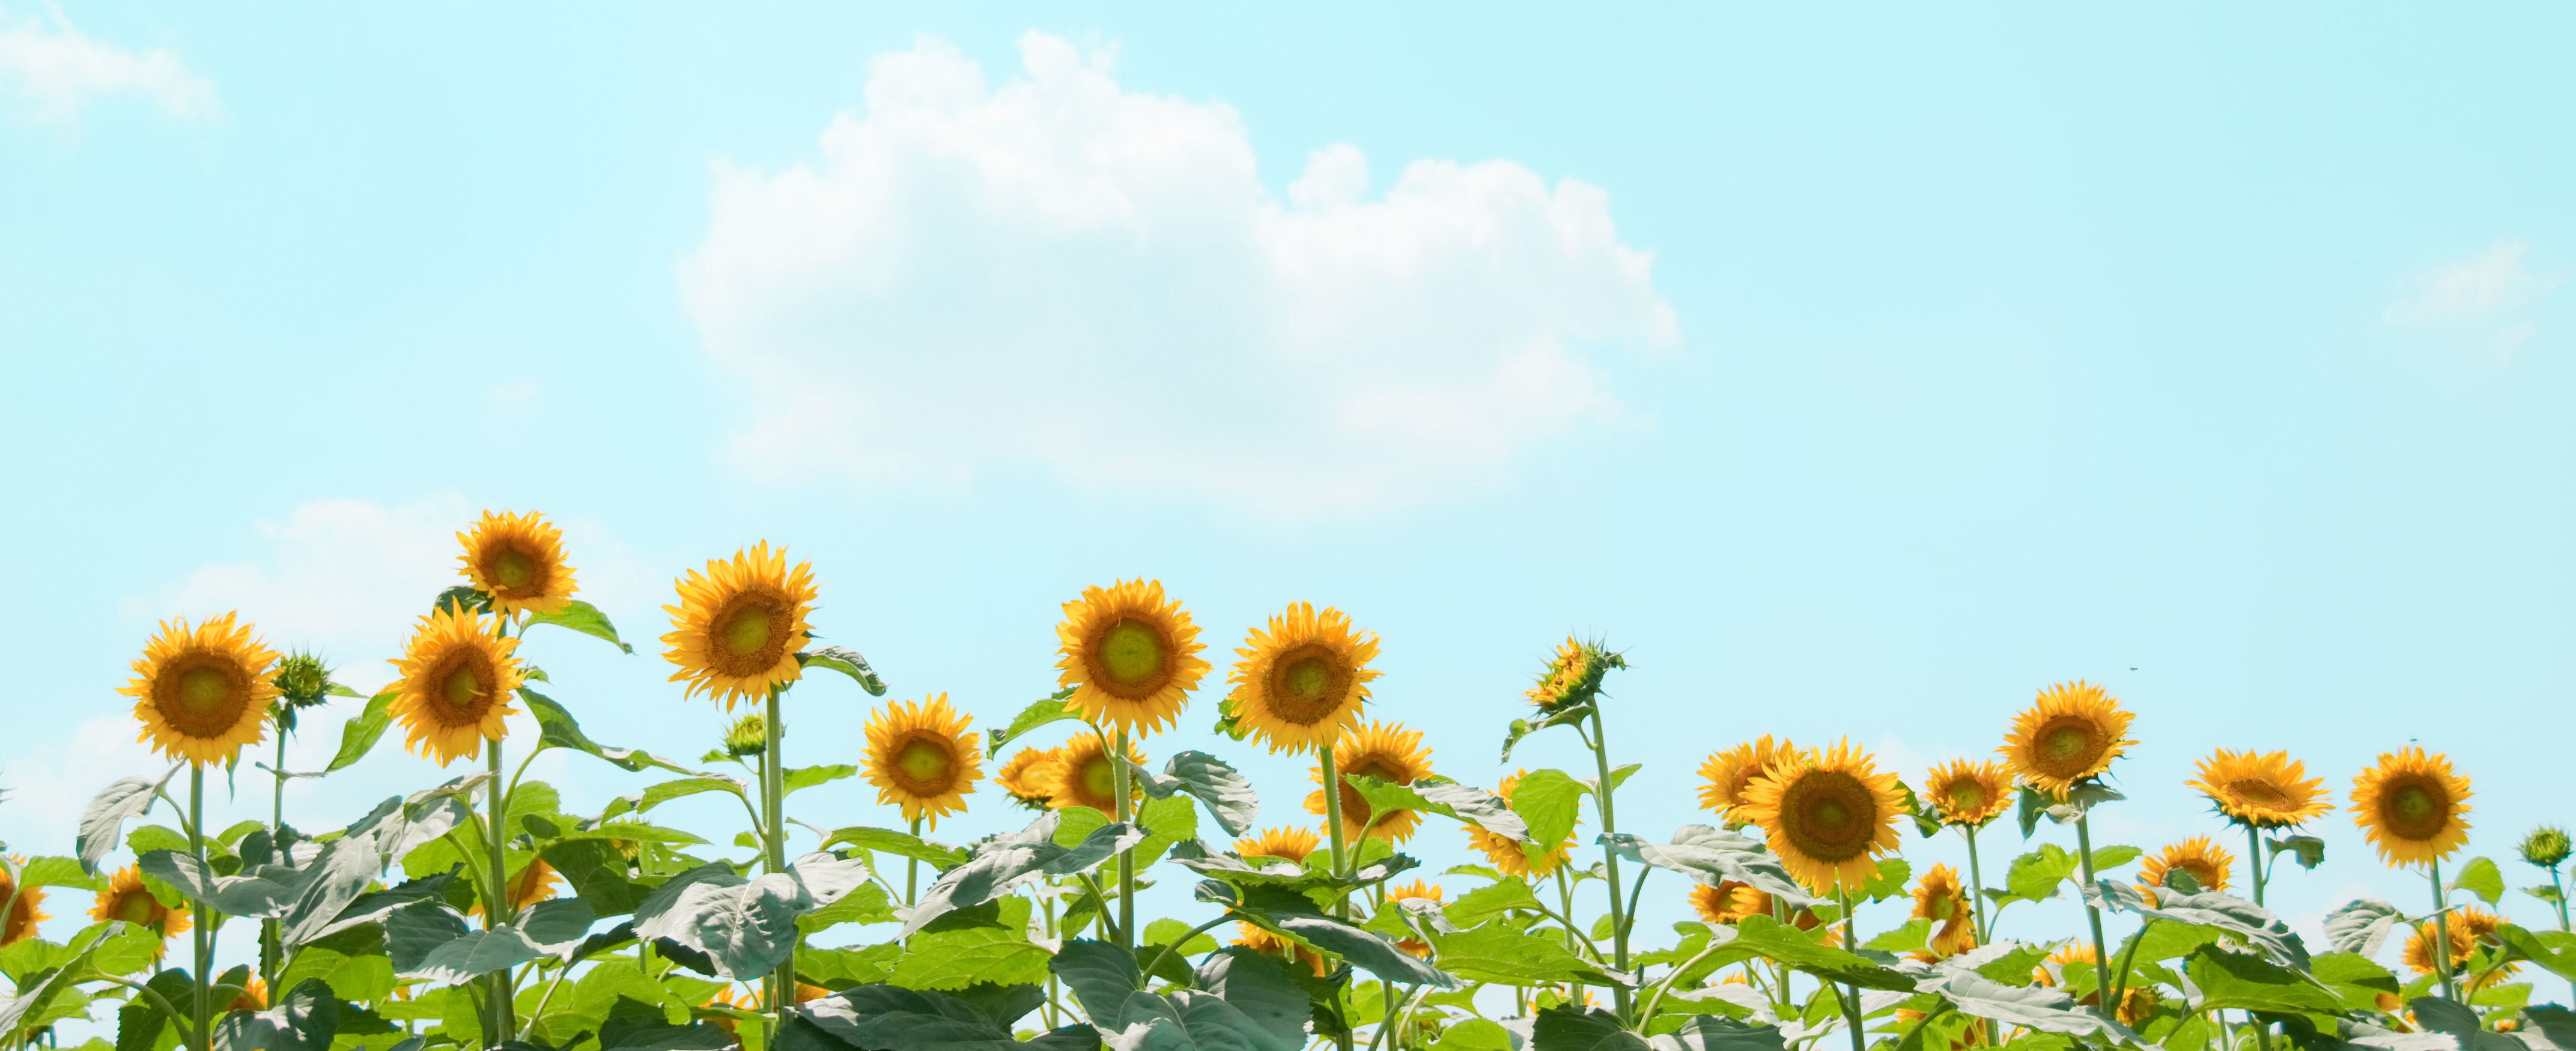 無料写真素材 花 植物 向日葵 ヒマワリ画像素材なら 無料 フリー写真素材のフリーフォト